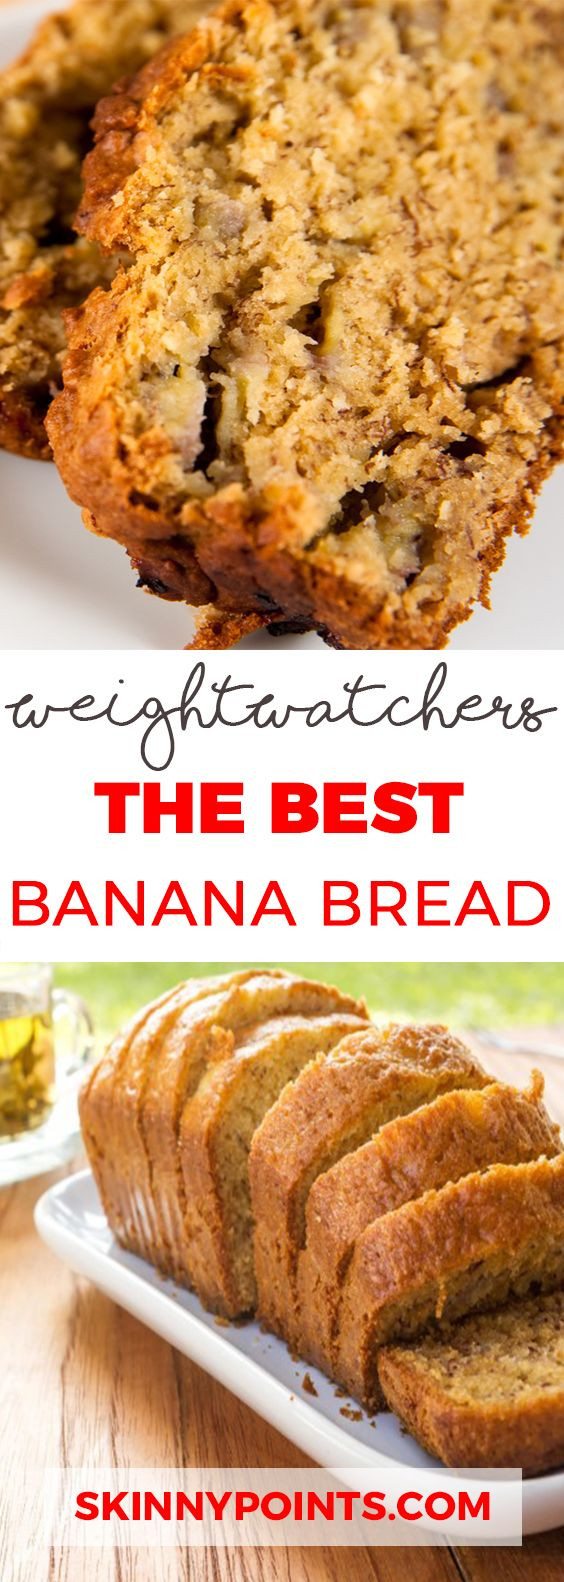 Weight Watcher Friendly Desserts
 25 Best Weight Watchers Desserts Recipes with SmartPoints